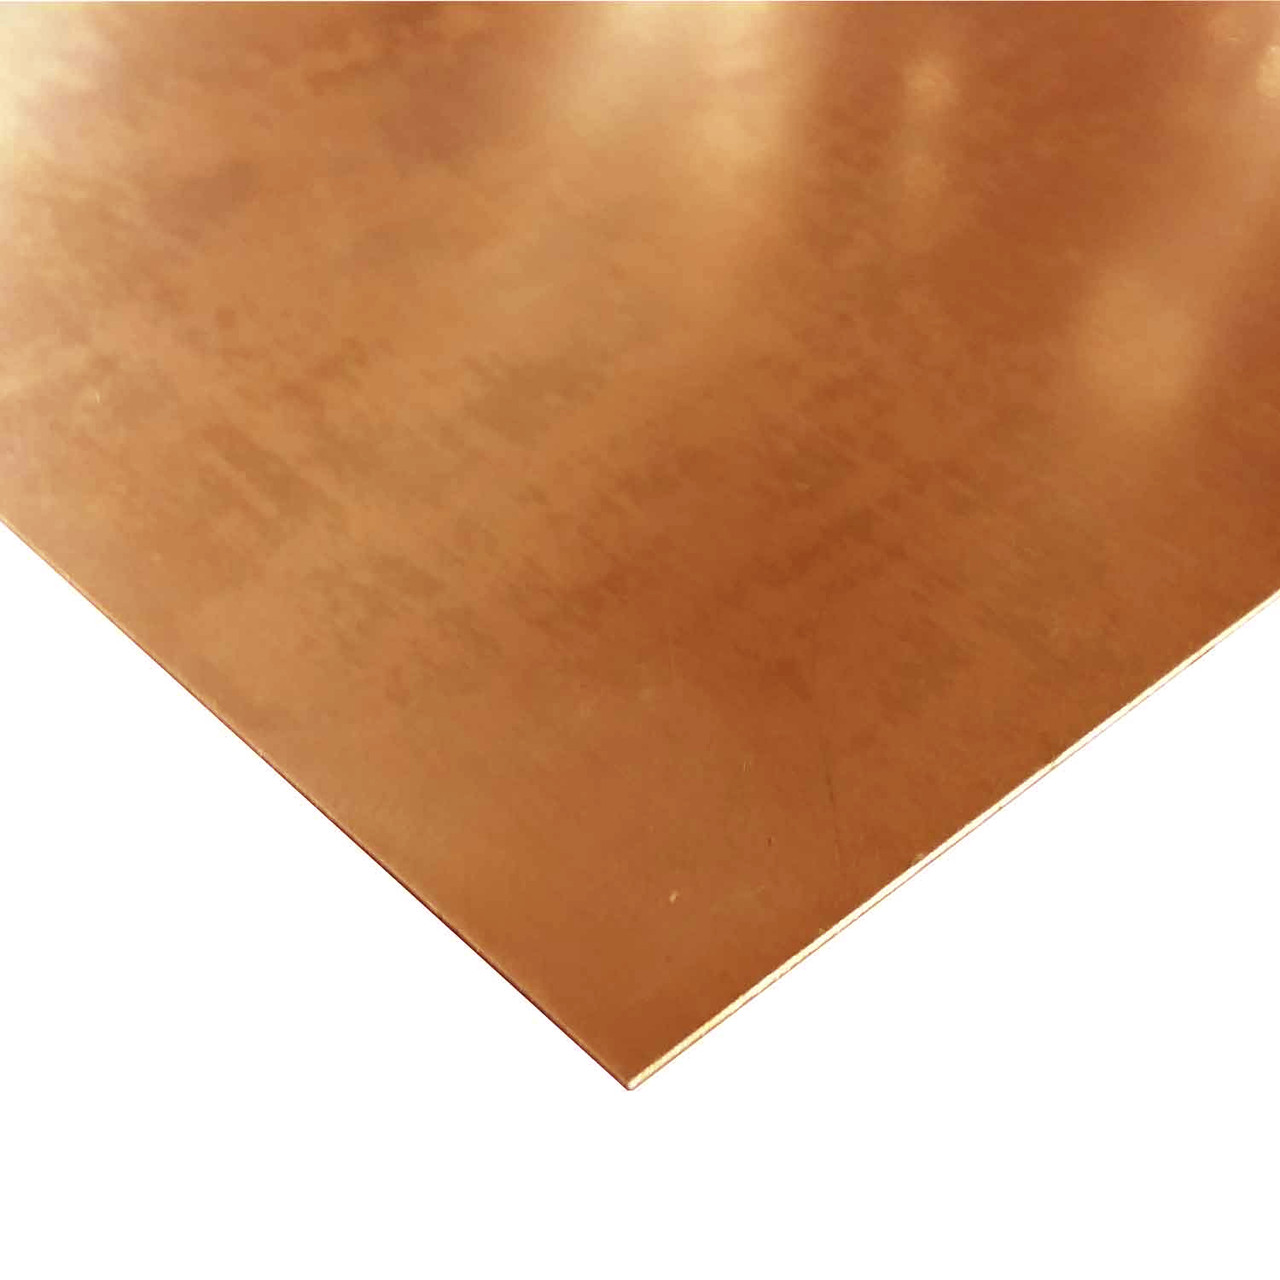 0.040" x 2" x 18", C110-H02 Copper Sheet